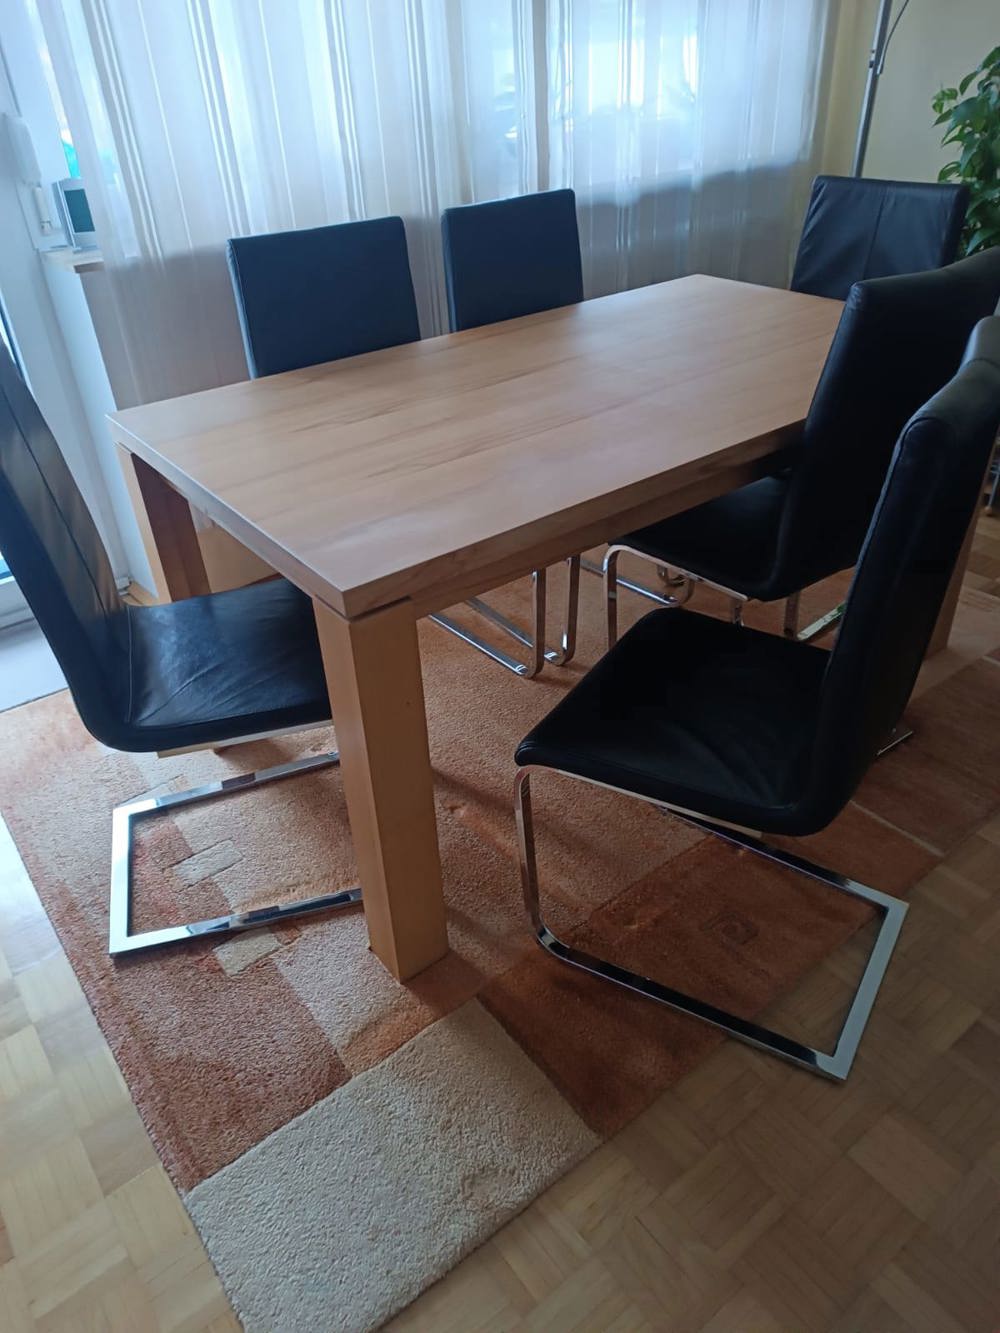 Tisch und Stühle *Wohnungsauflösung*